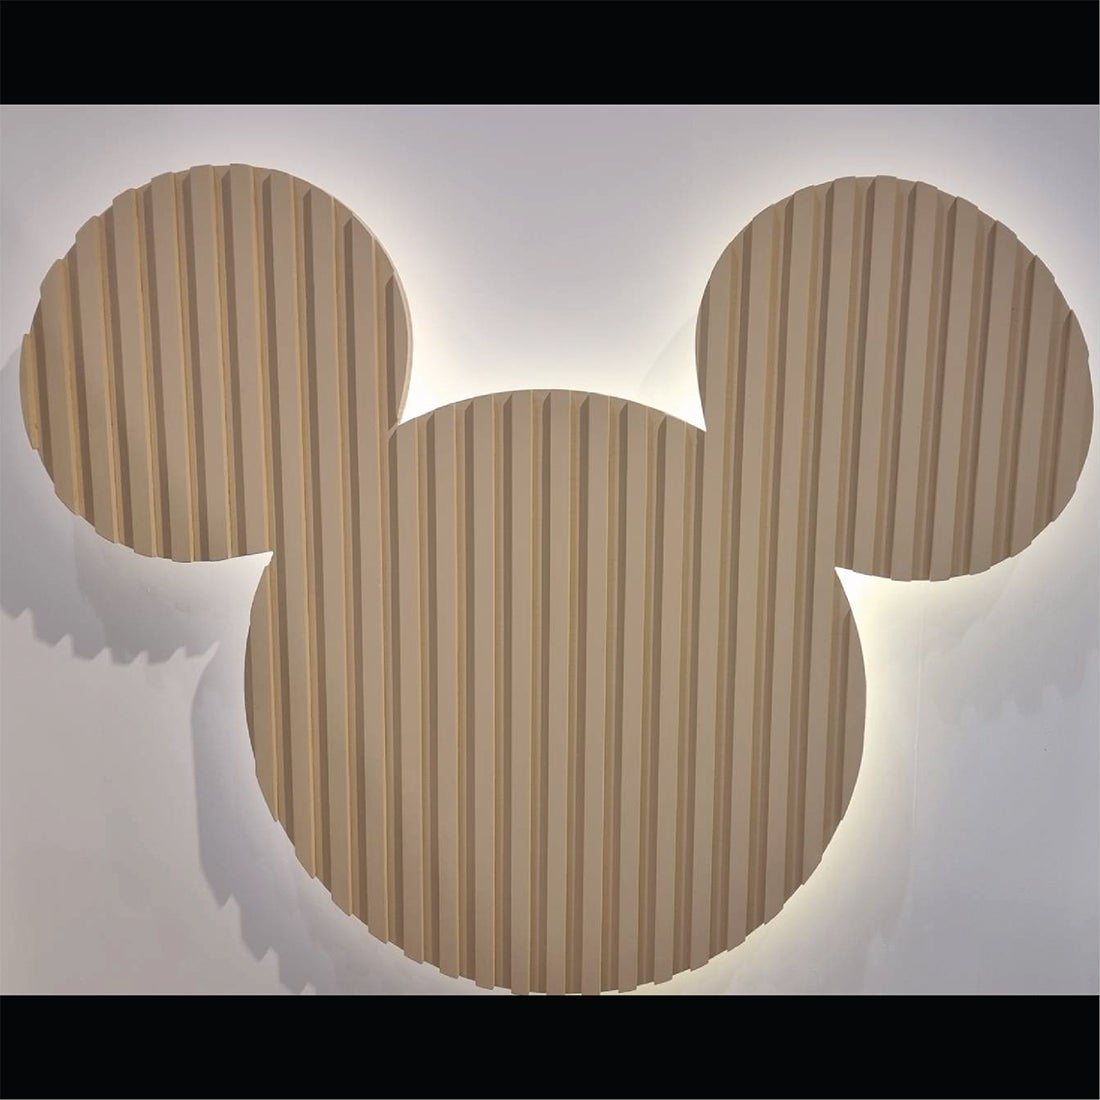 ผนังประดับแขวน Disneyhome รูปทรง Mickey Mouse ลายระแนงสีเนเชอรัล